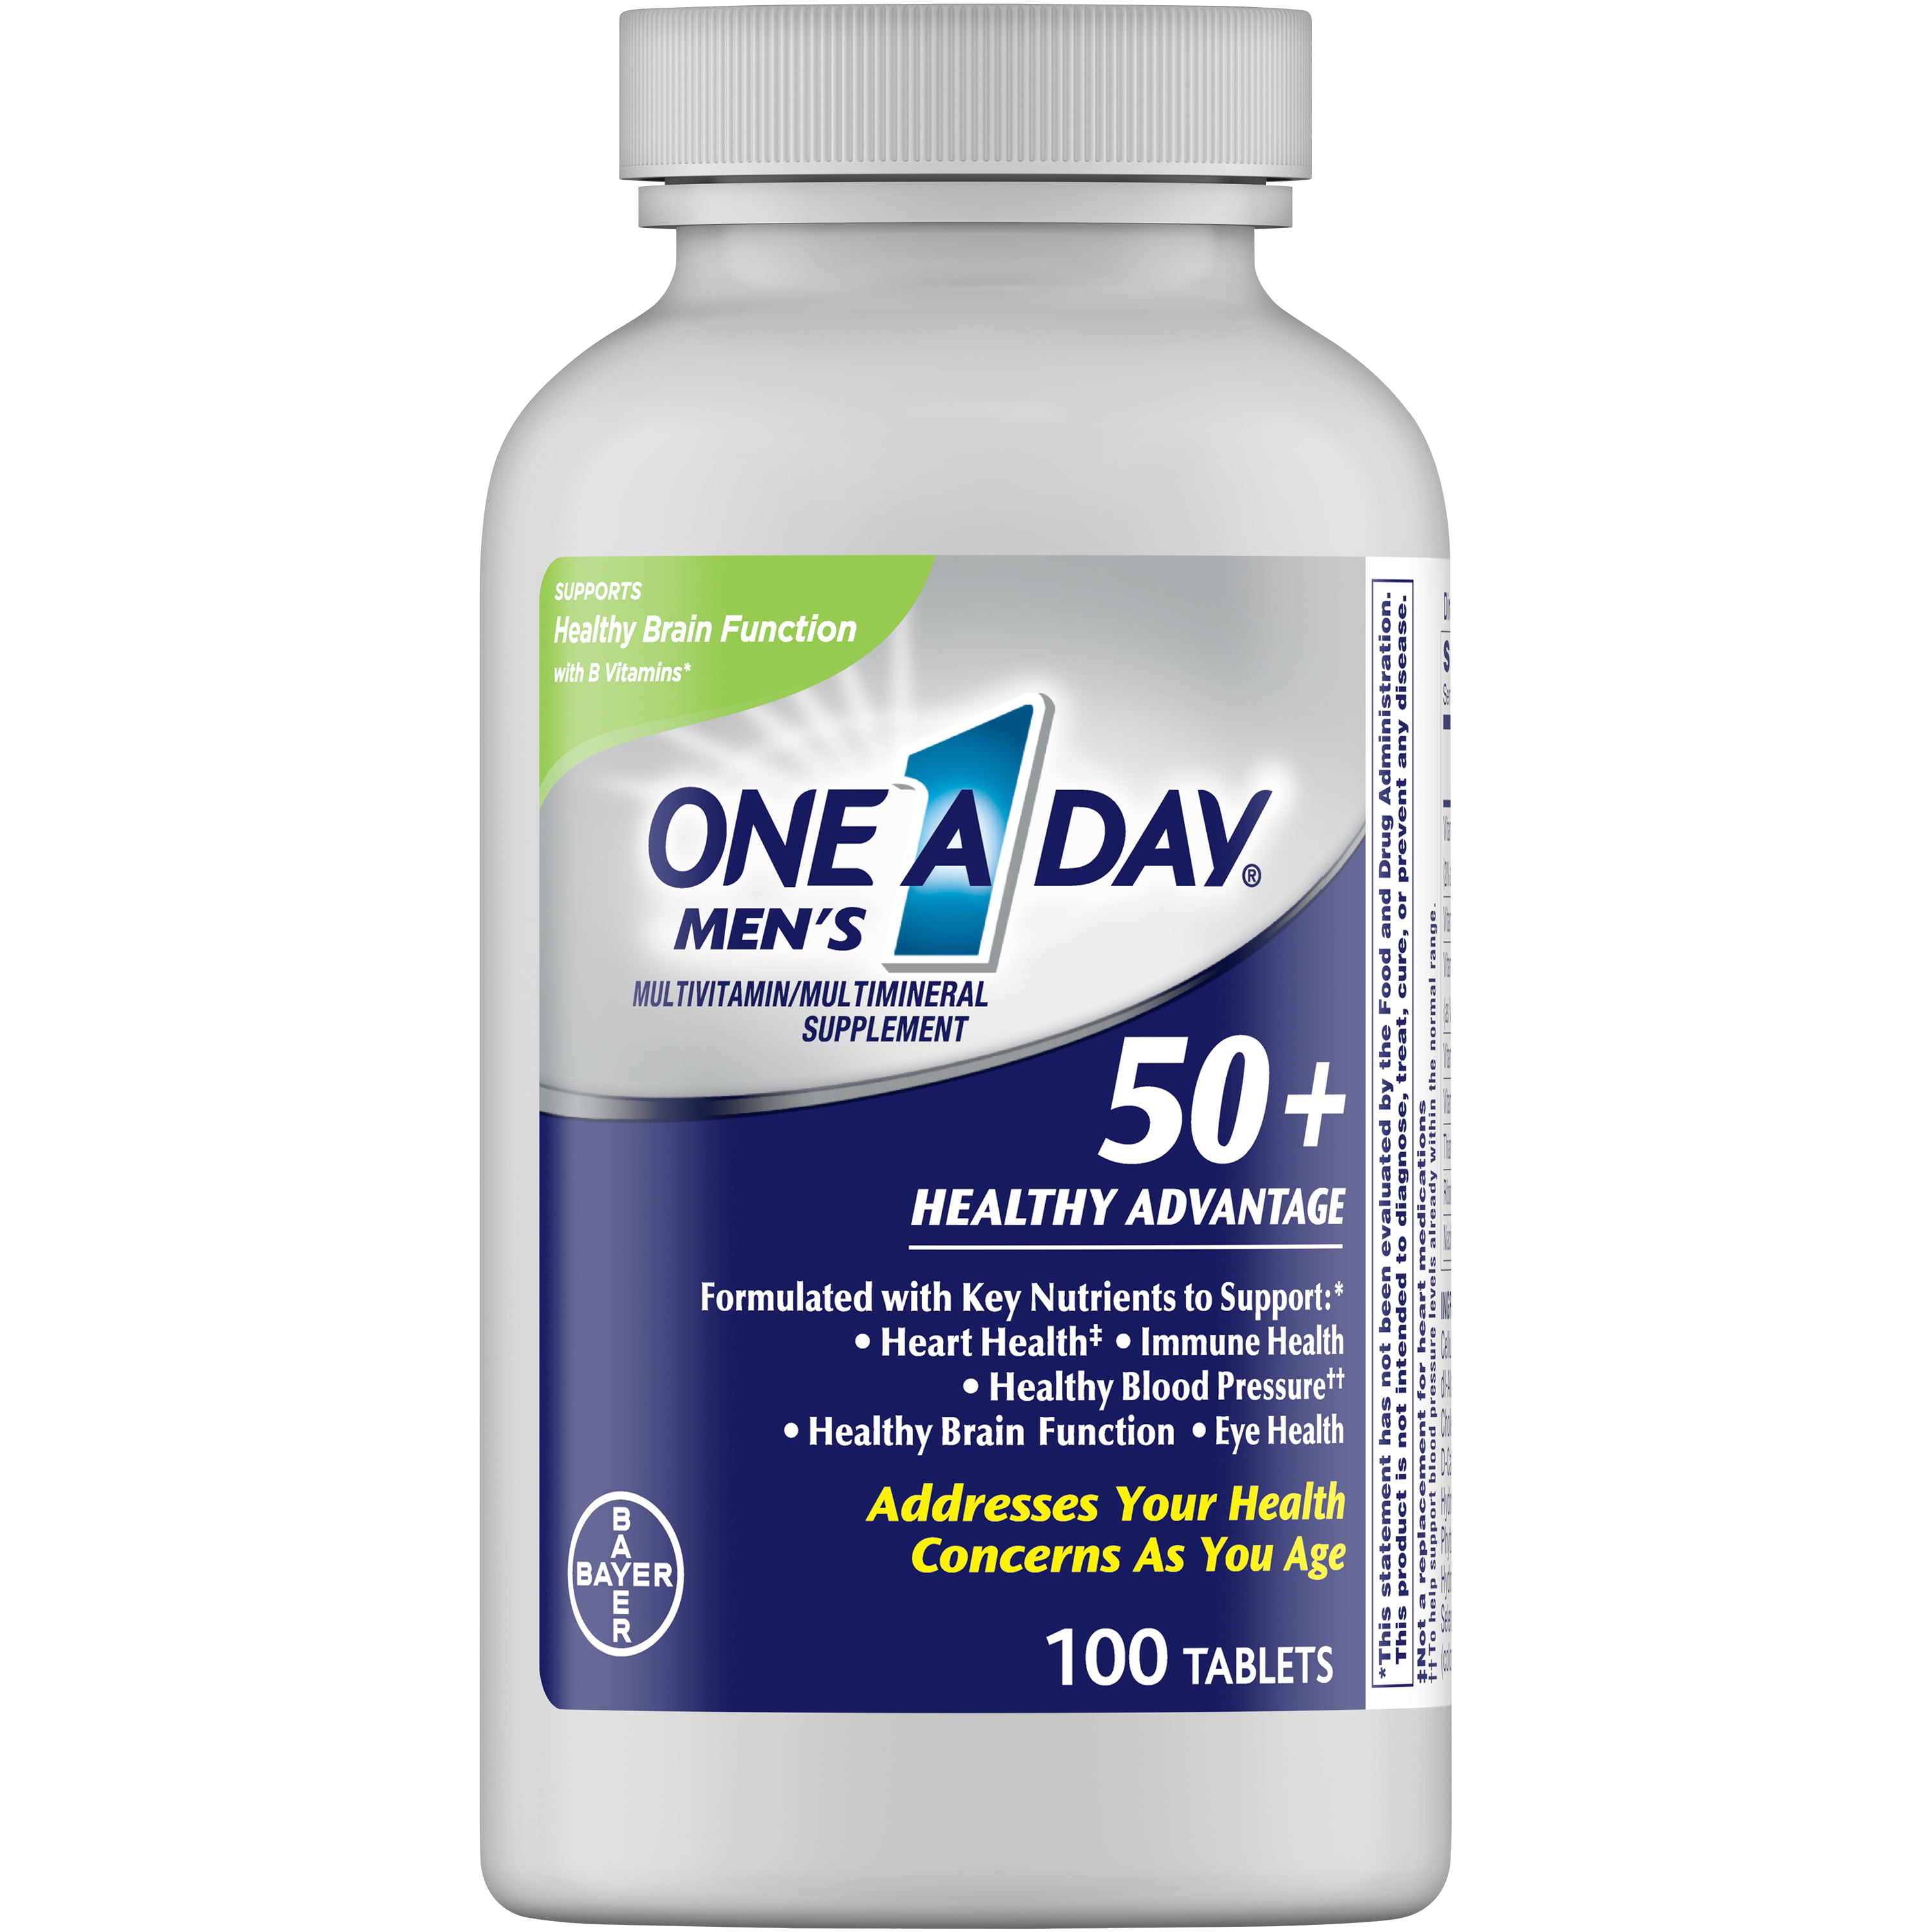 Витамины для мужчин 50 рейтинг. One a Day витамины для мужчин Bayer. Витамины one a Day men's 50+. 1 A Day витамины Bayer. One-a-Day Mens 50+ healthy advantage.